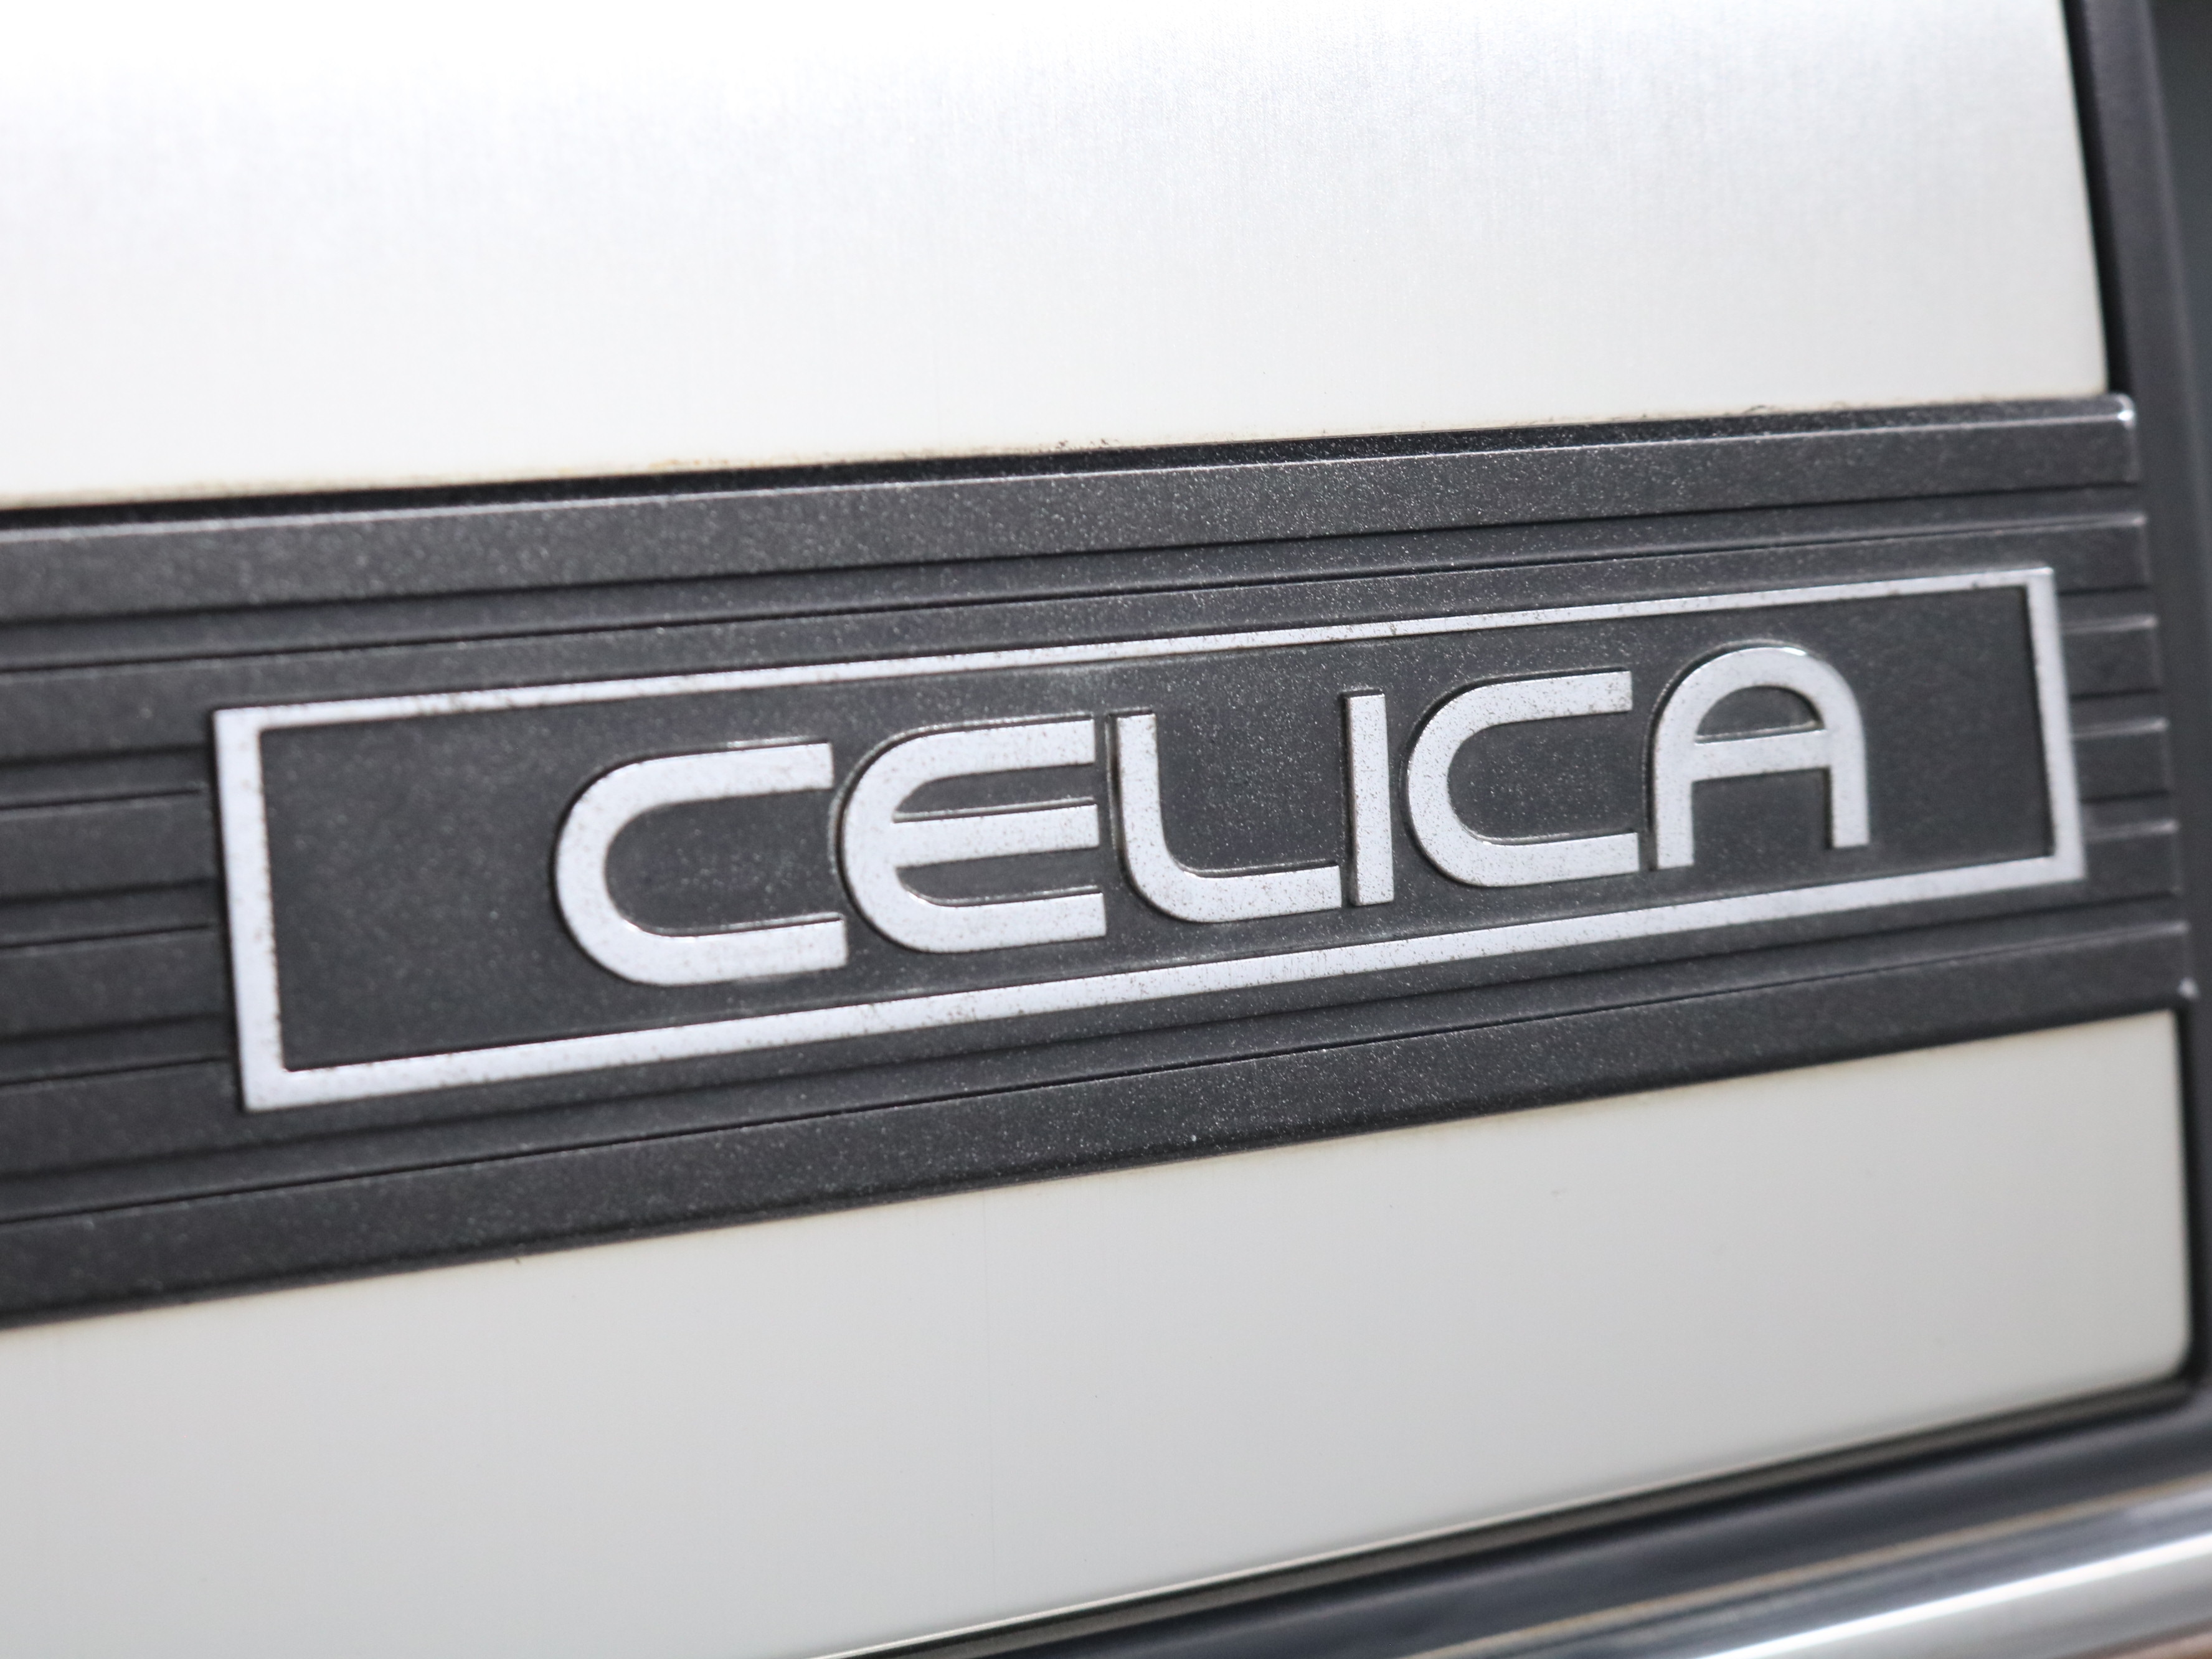 1980 Toyota Celica 49